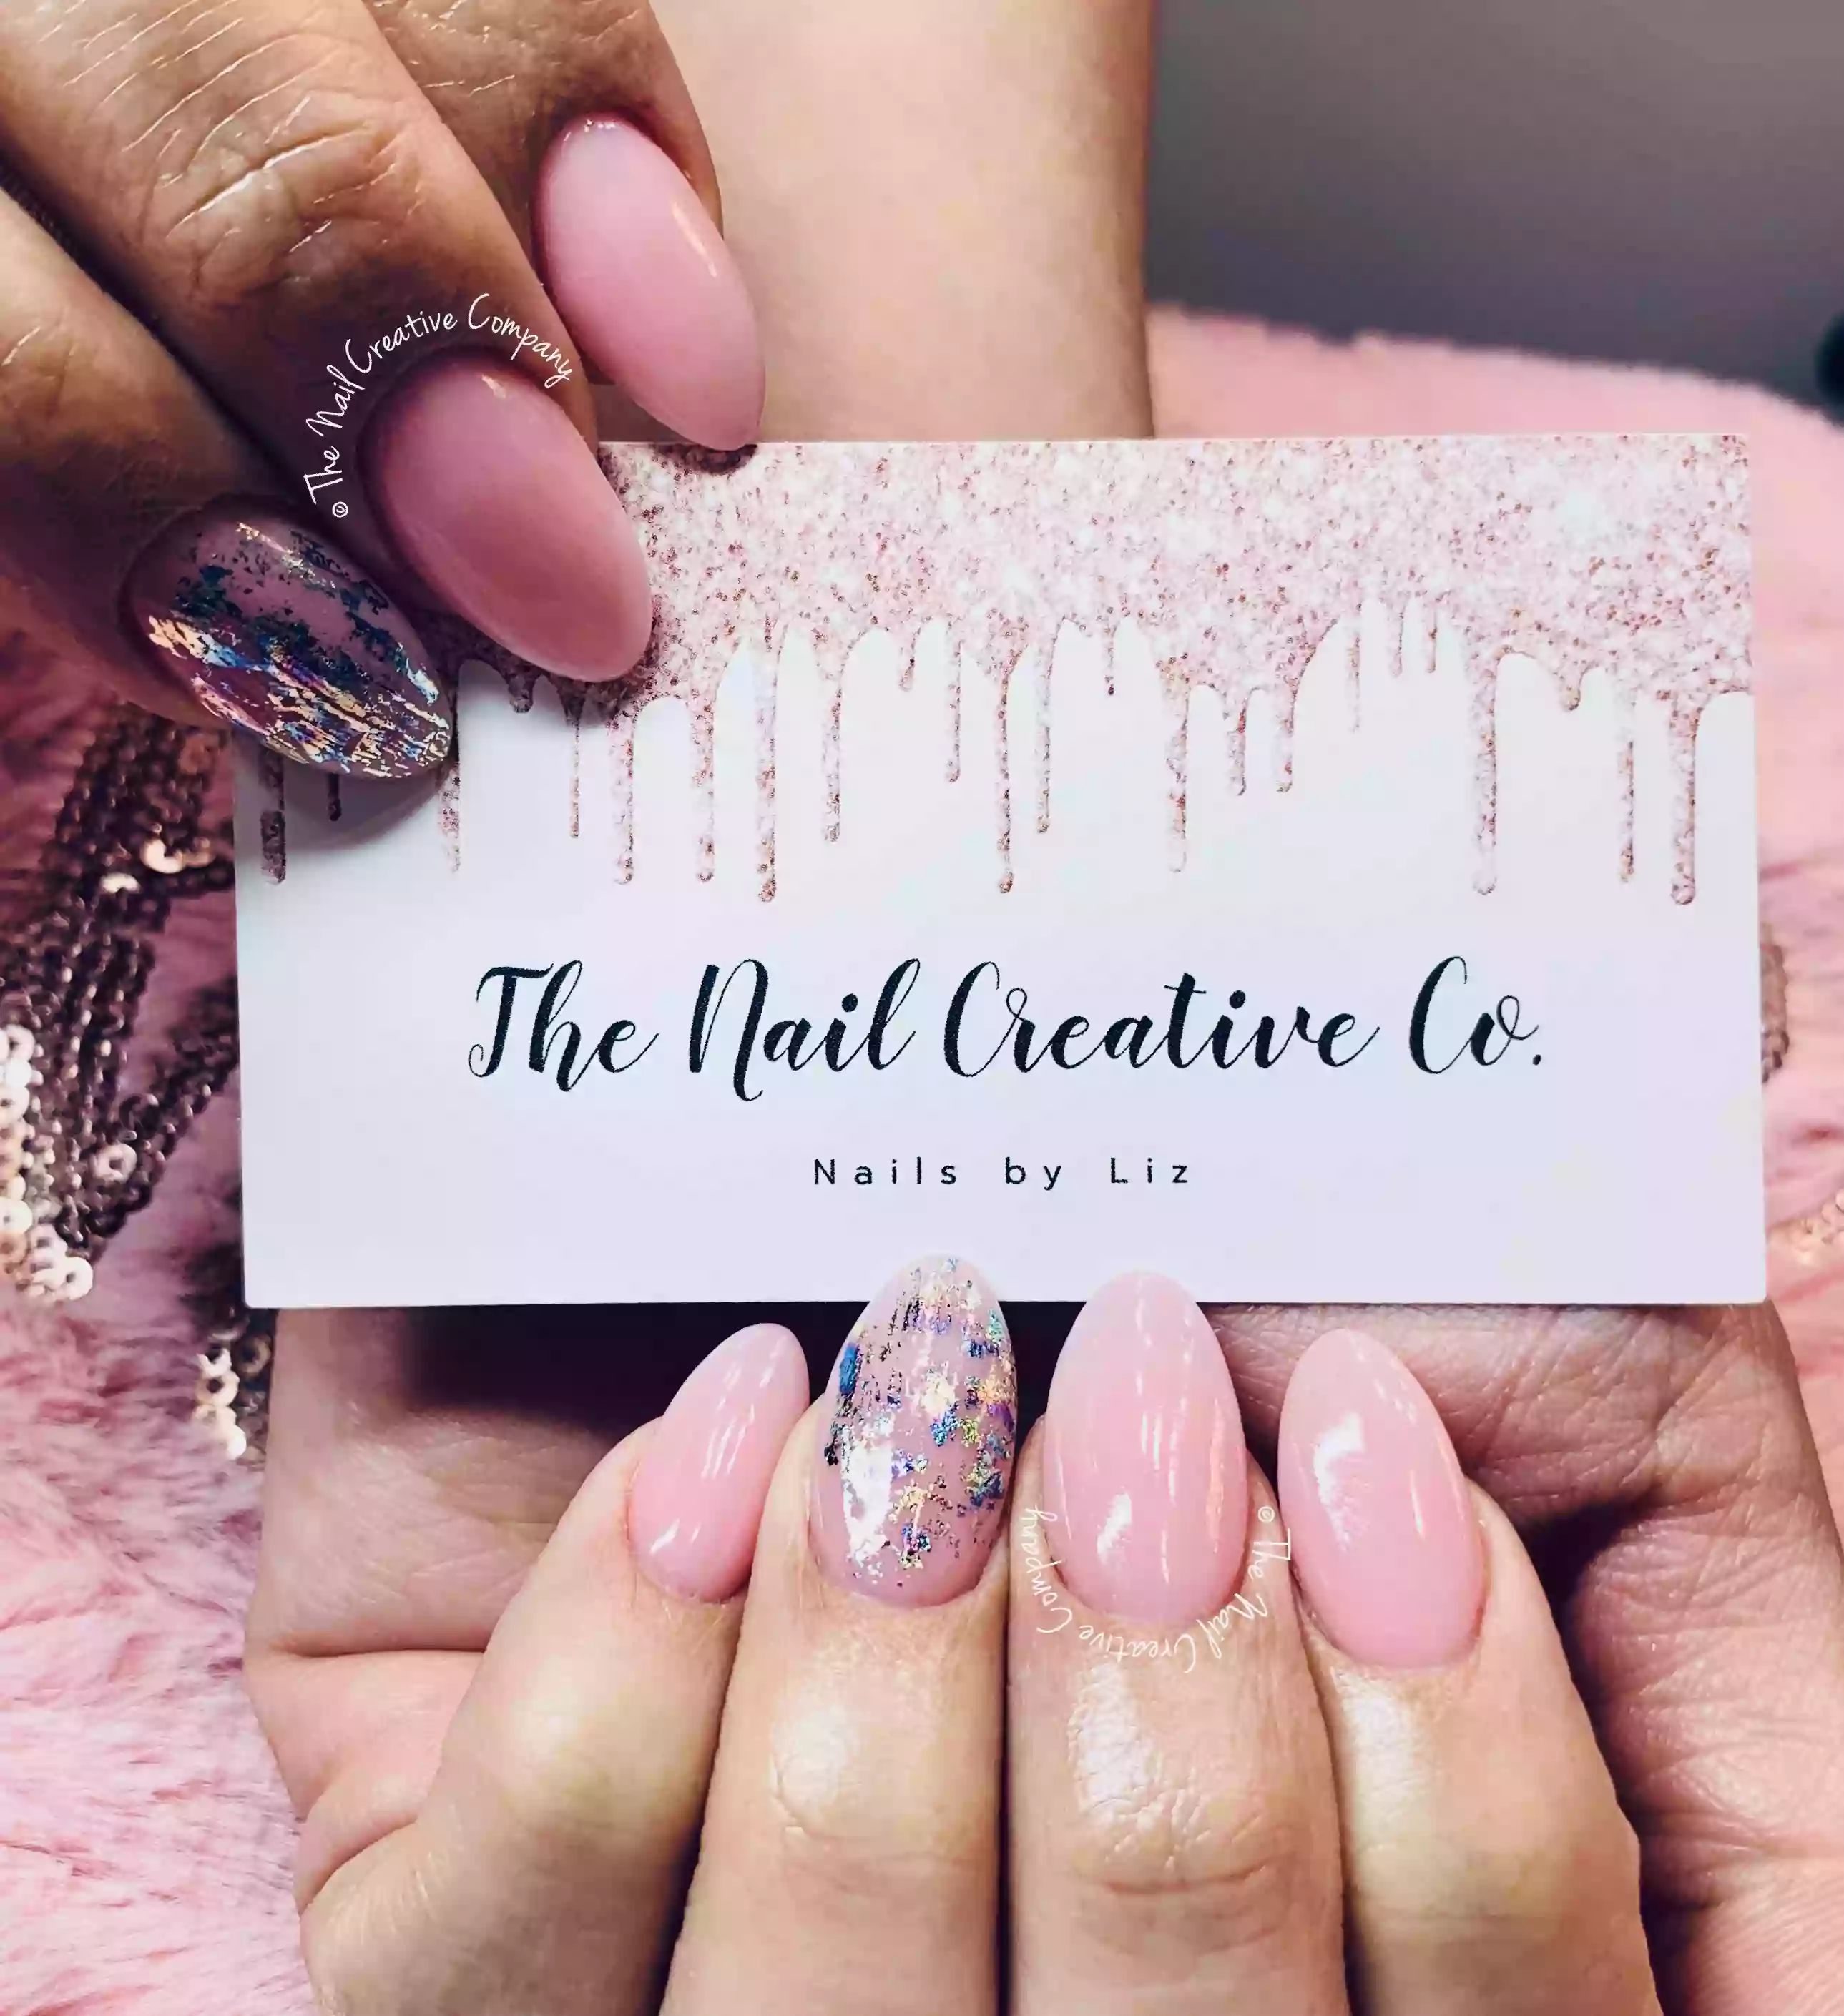 The Nail Creative Company, LLC